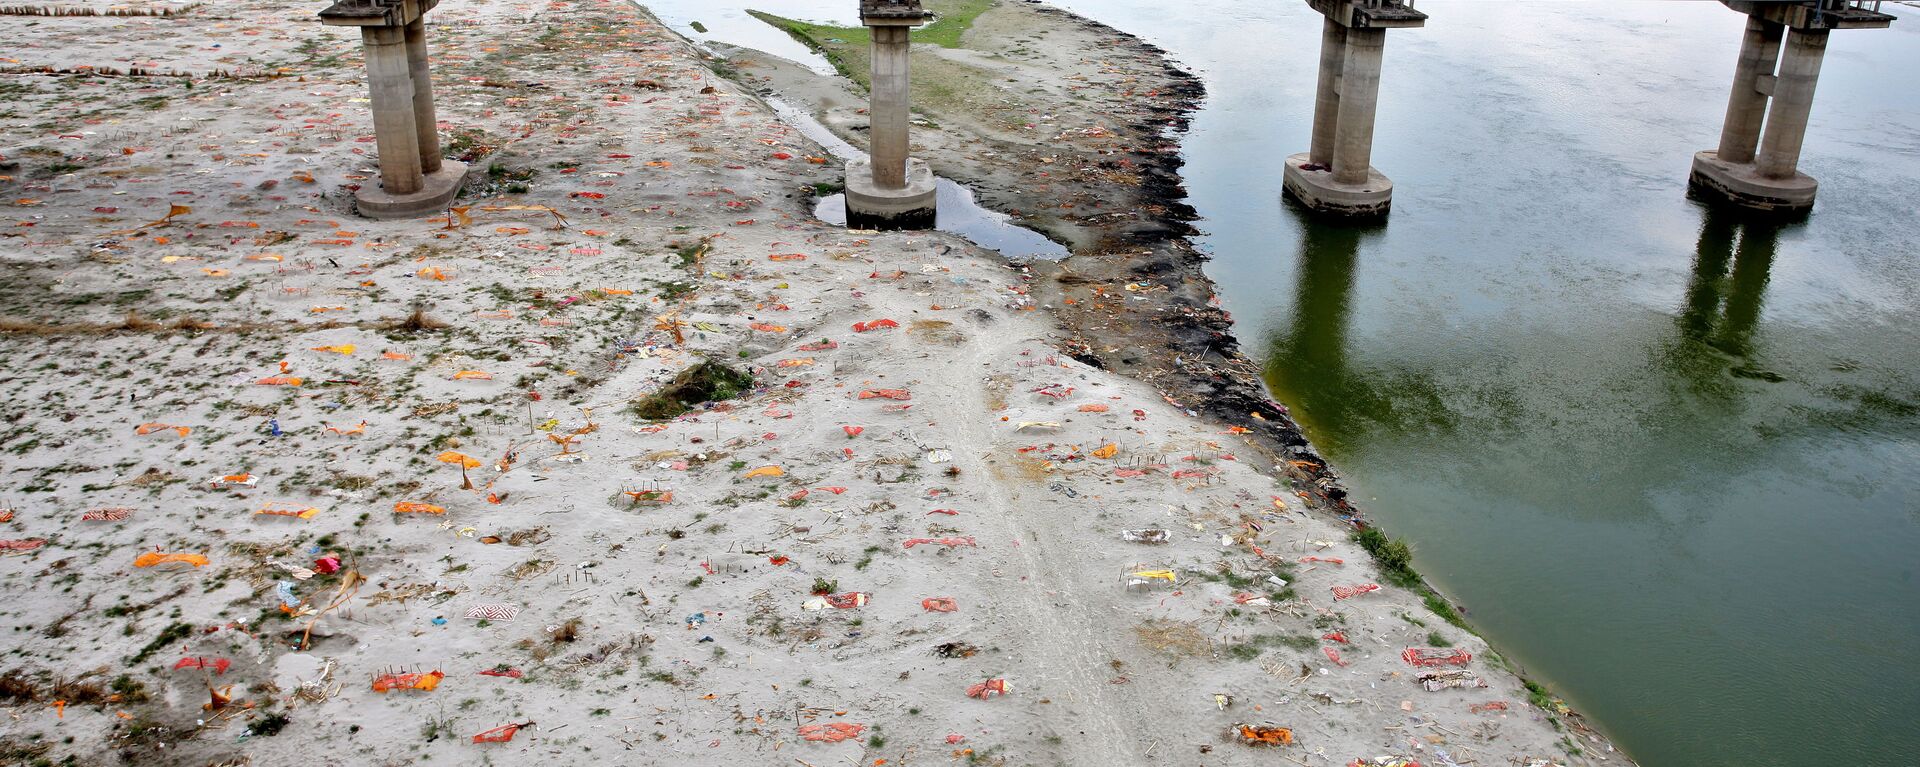 Неглубокие могилы на песчаном берегу Ганга людей, умерших от коронавируса, Индия - Sputnik International, 1920, 24.12.2021